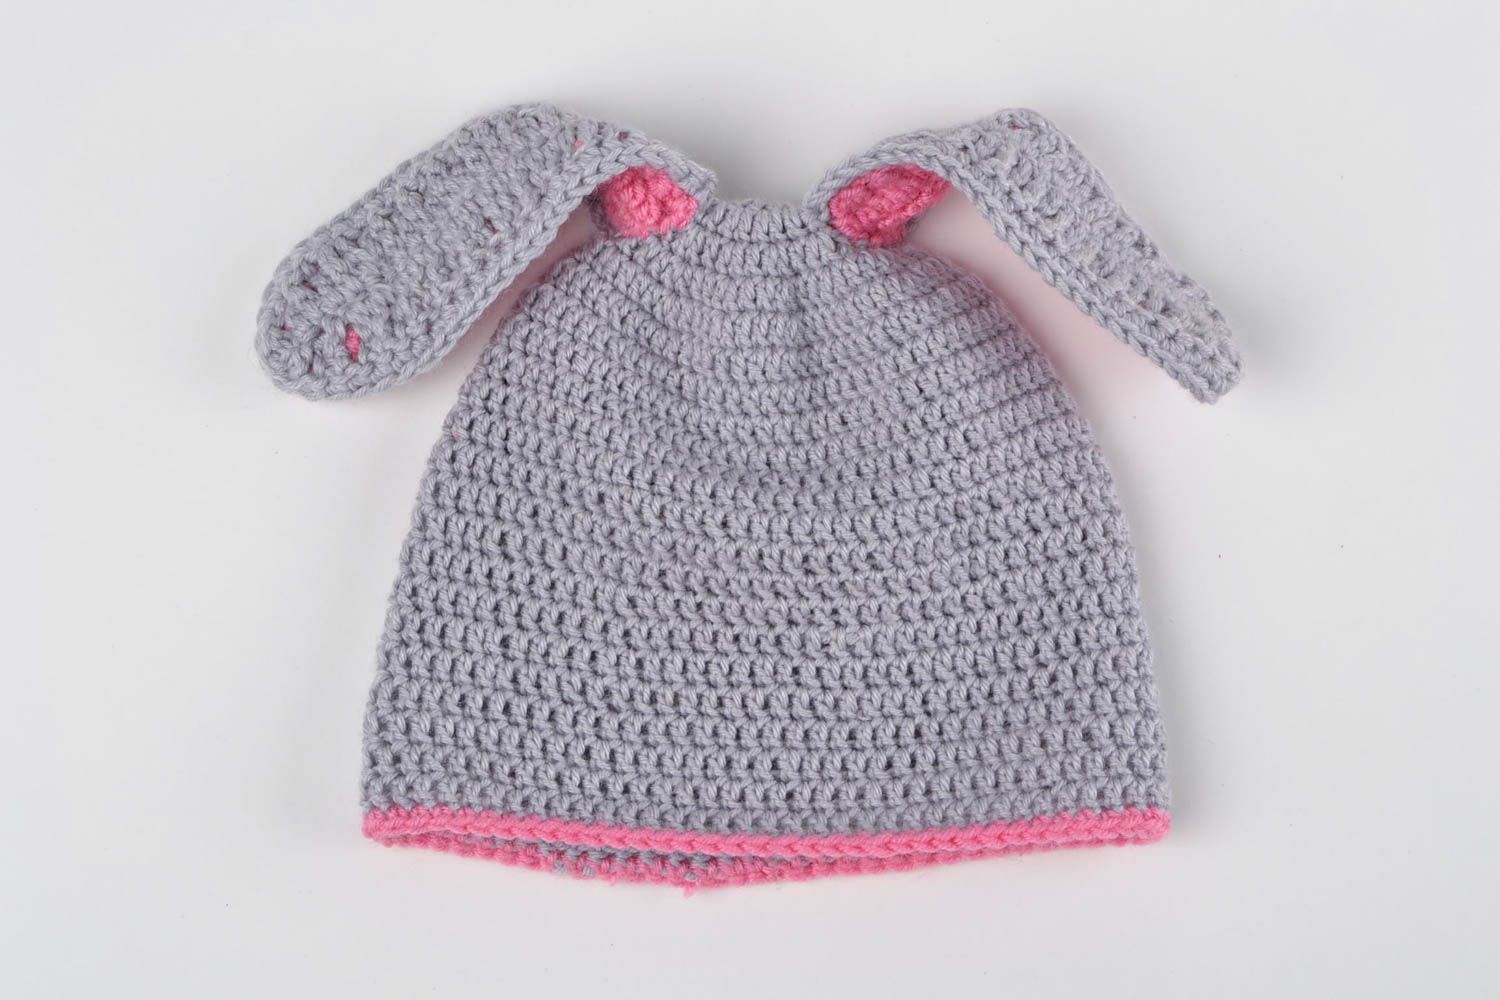 Culotte bébé fait main Bonnet bébé Vêtement enfant tricotés au crochet photo 3